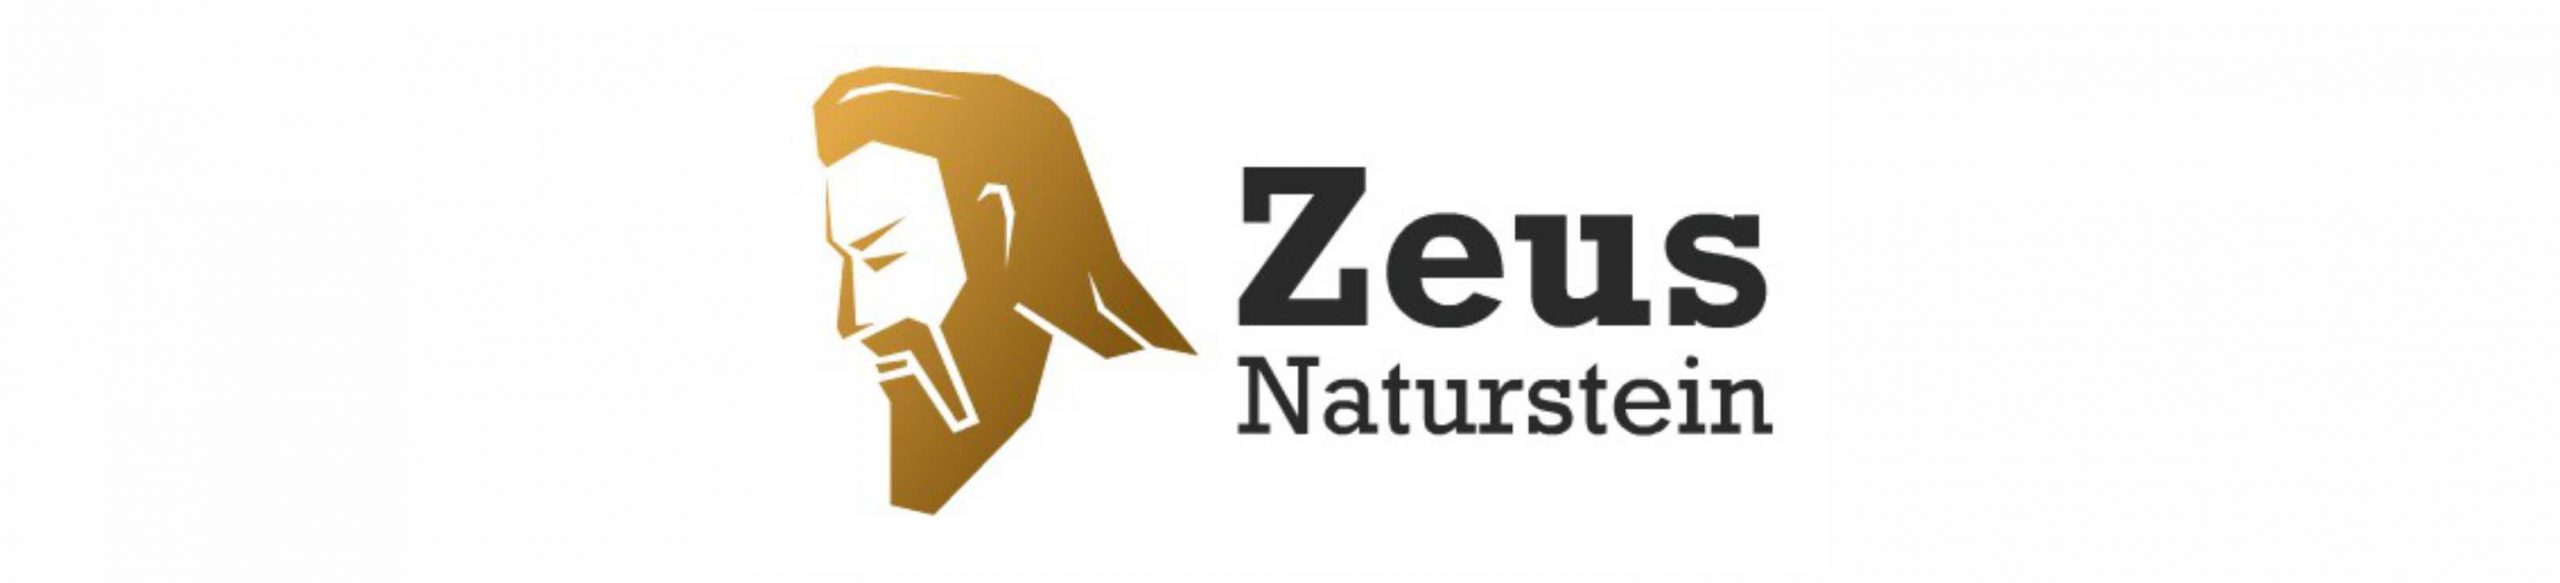 Zeus Naturstein Inh. Petros Kubridis -  Frechen